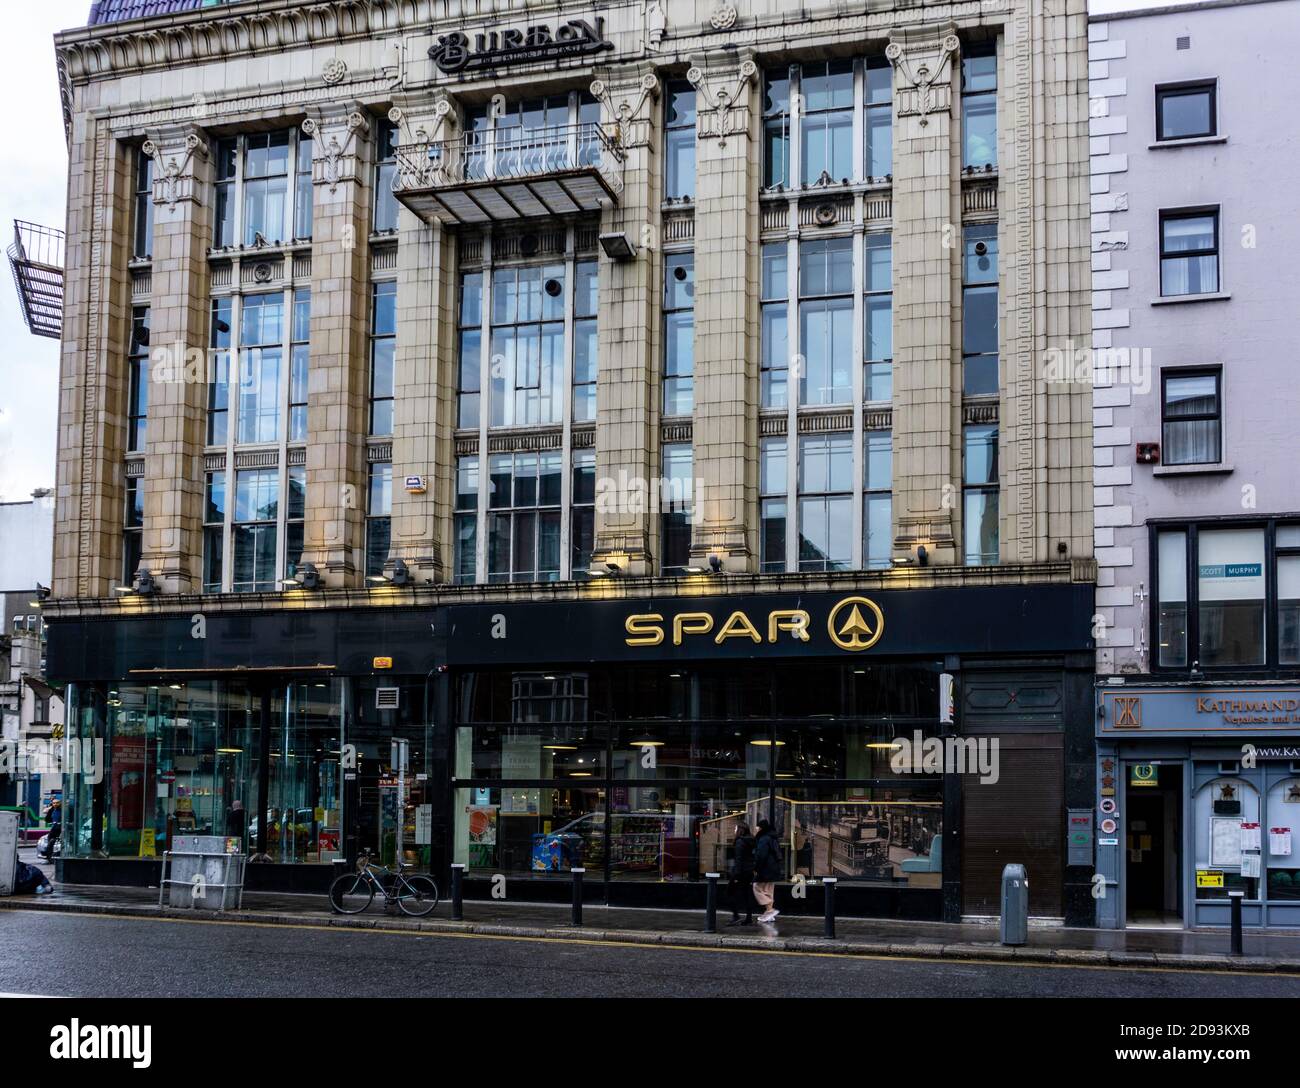 Der Spar Convenience Store in Dame Street Dublin, Irland, befindet sich im alten Montague Burton Building. Gebaut ursprünglich c1928. Stockfoto